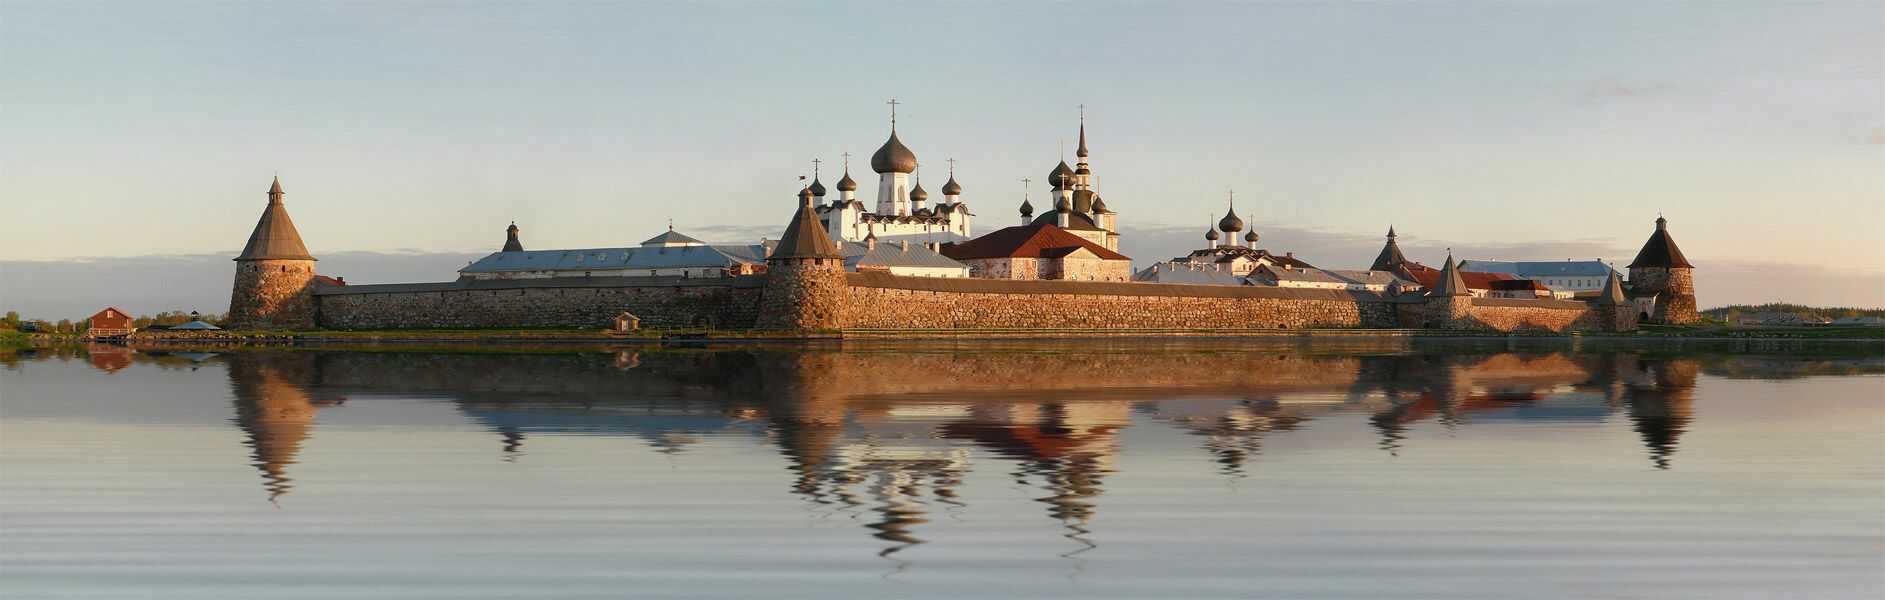 Sant Petersburg